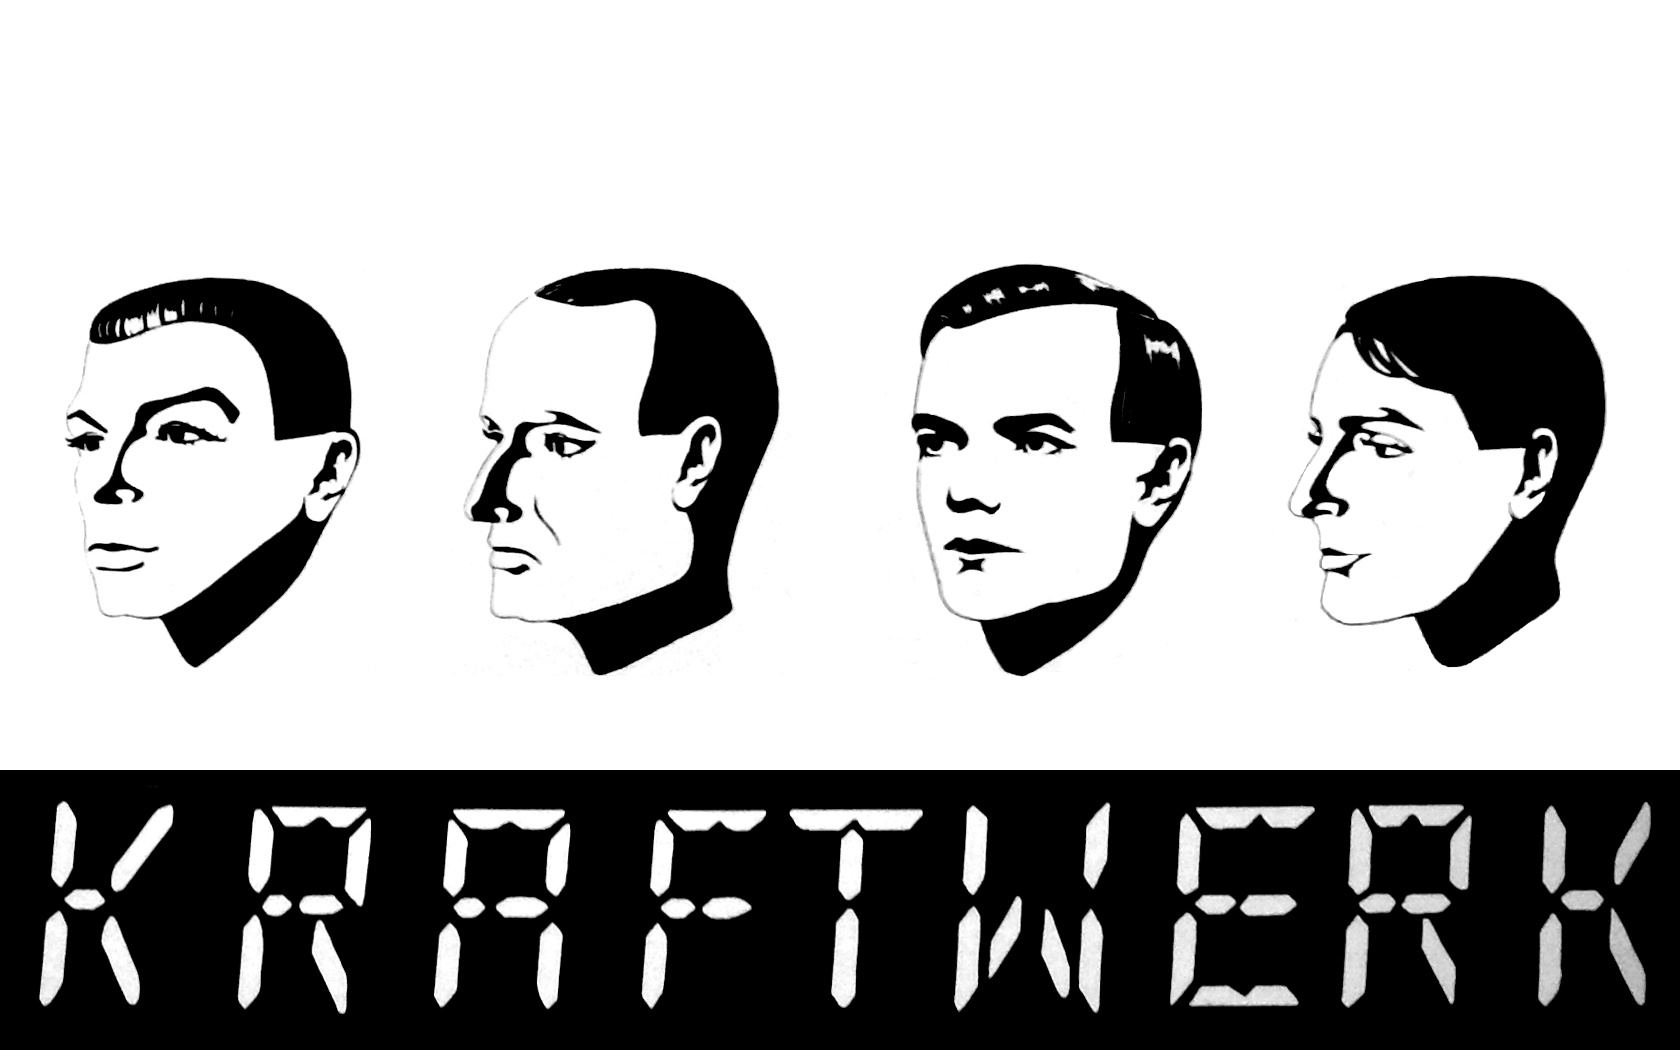 Kraftwerk Wallpapers